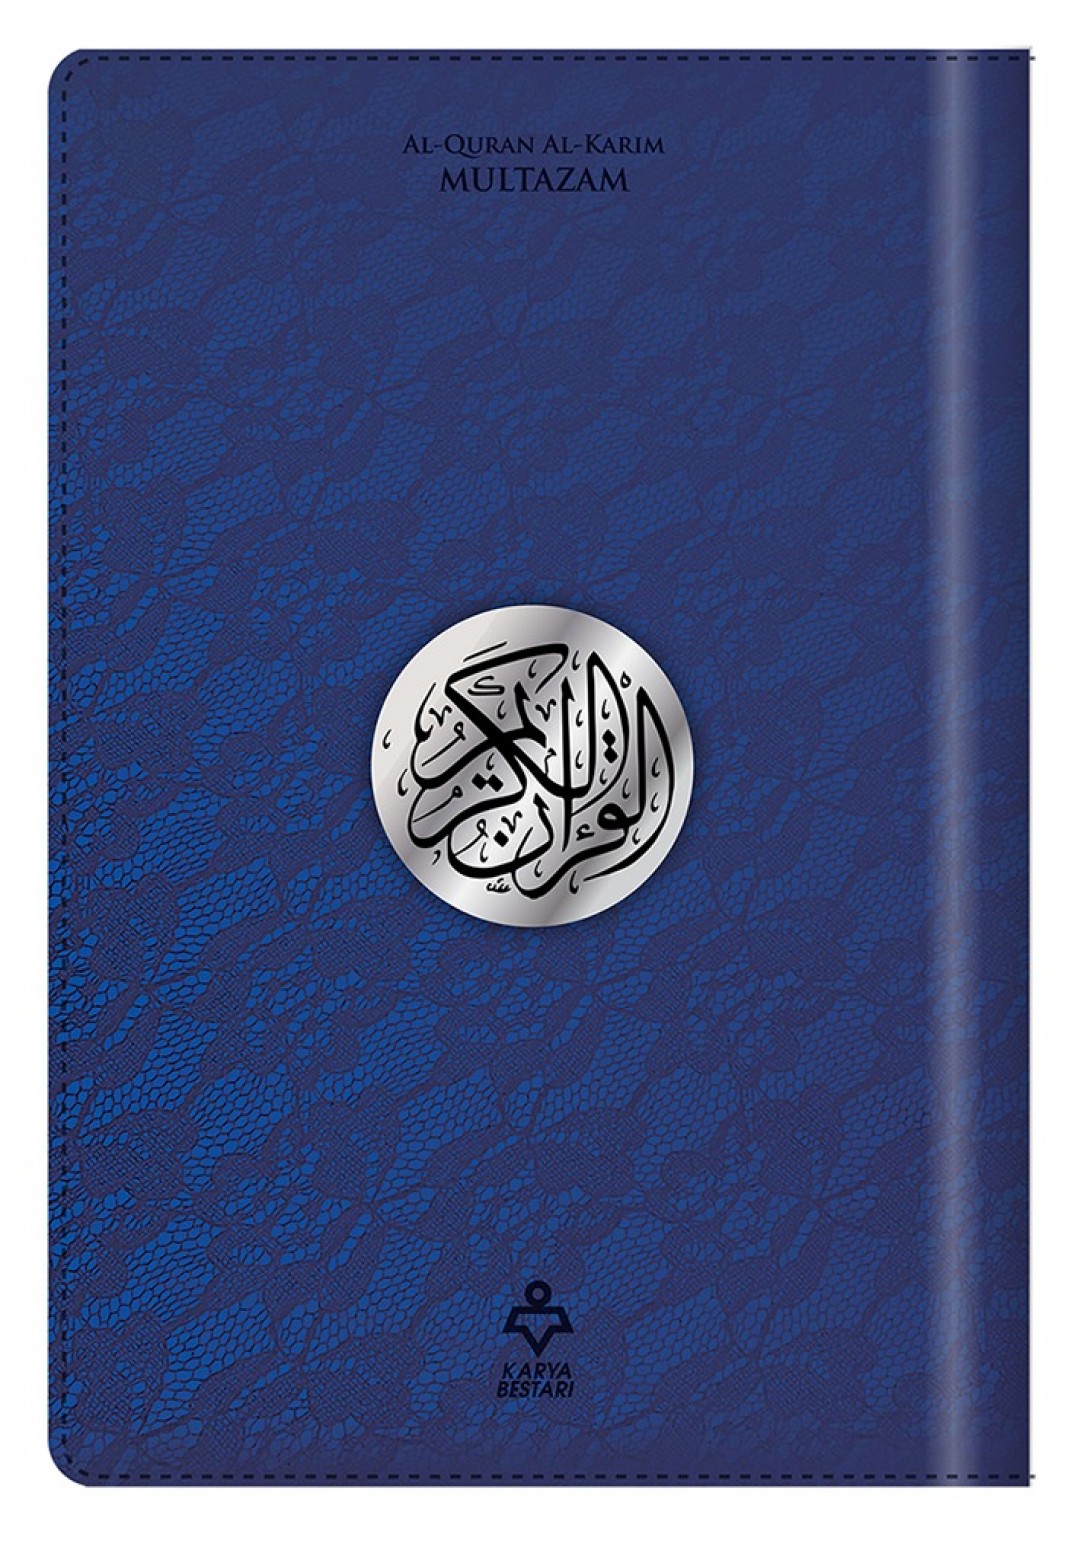 Al-Quran Al-Karim Multazam Organizer (Waqaf Ibtida') A5